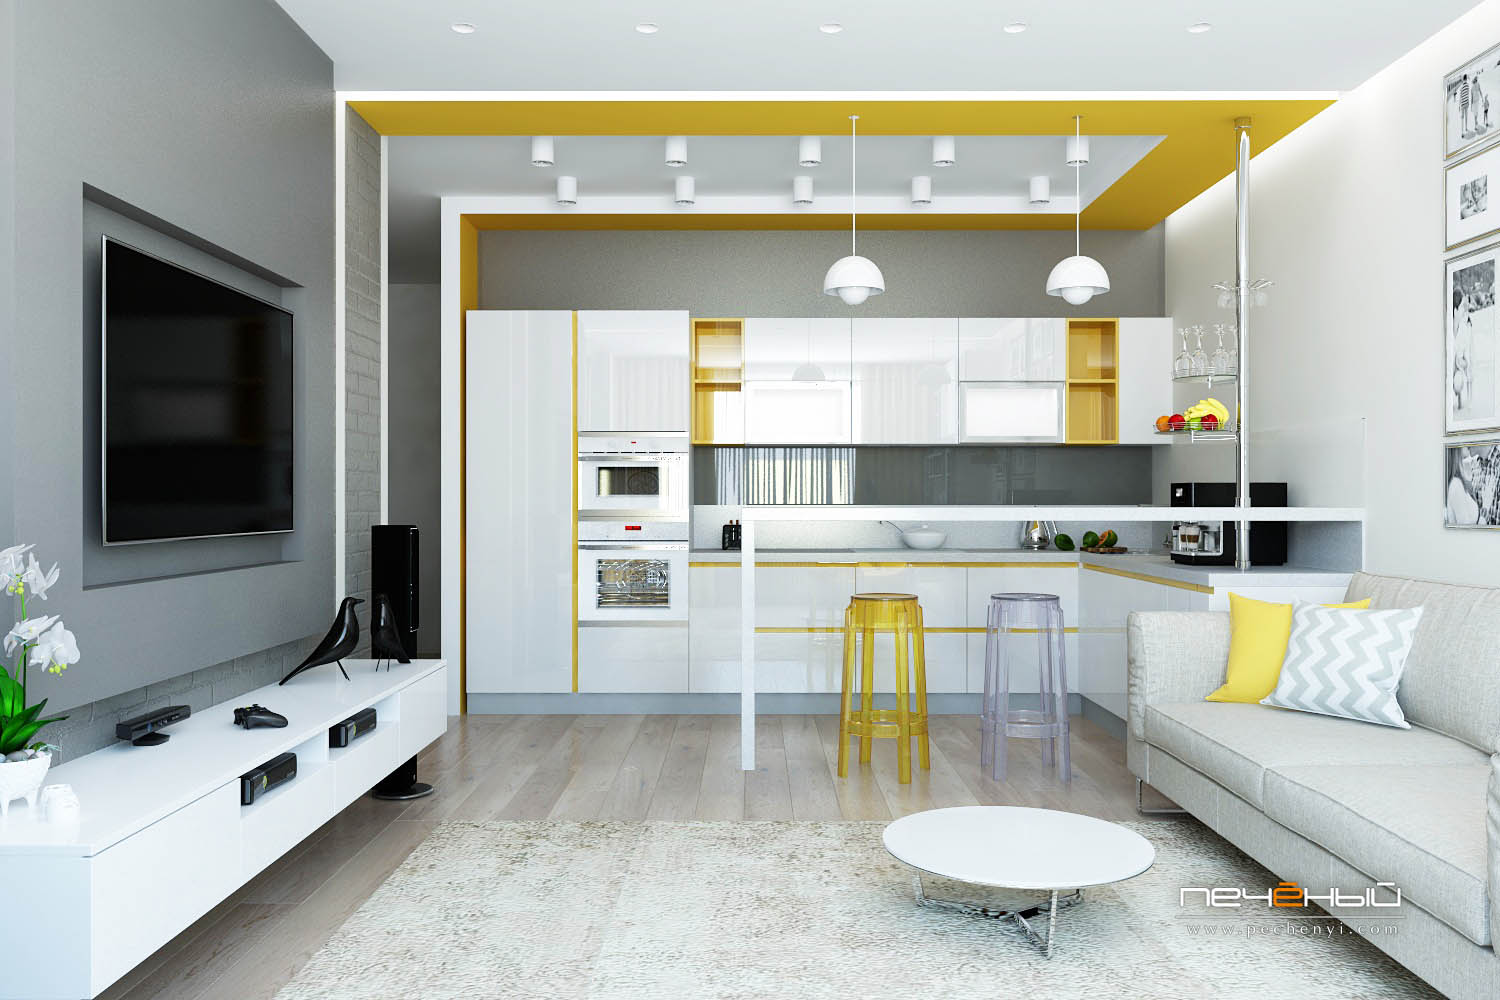 Кухня-гостиная: как создать идеальный дизайн интерьера?